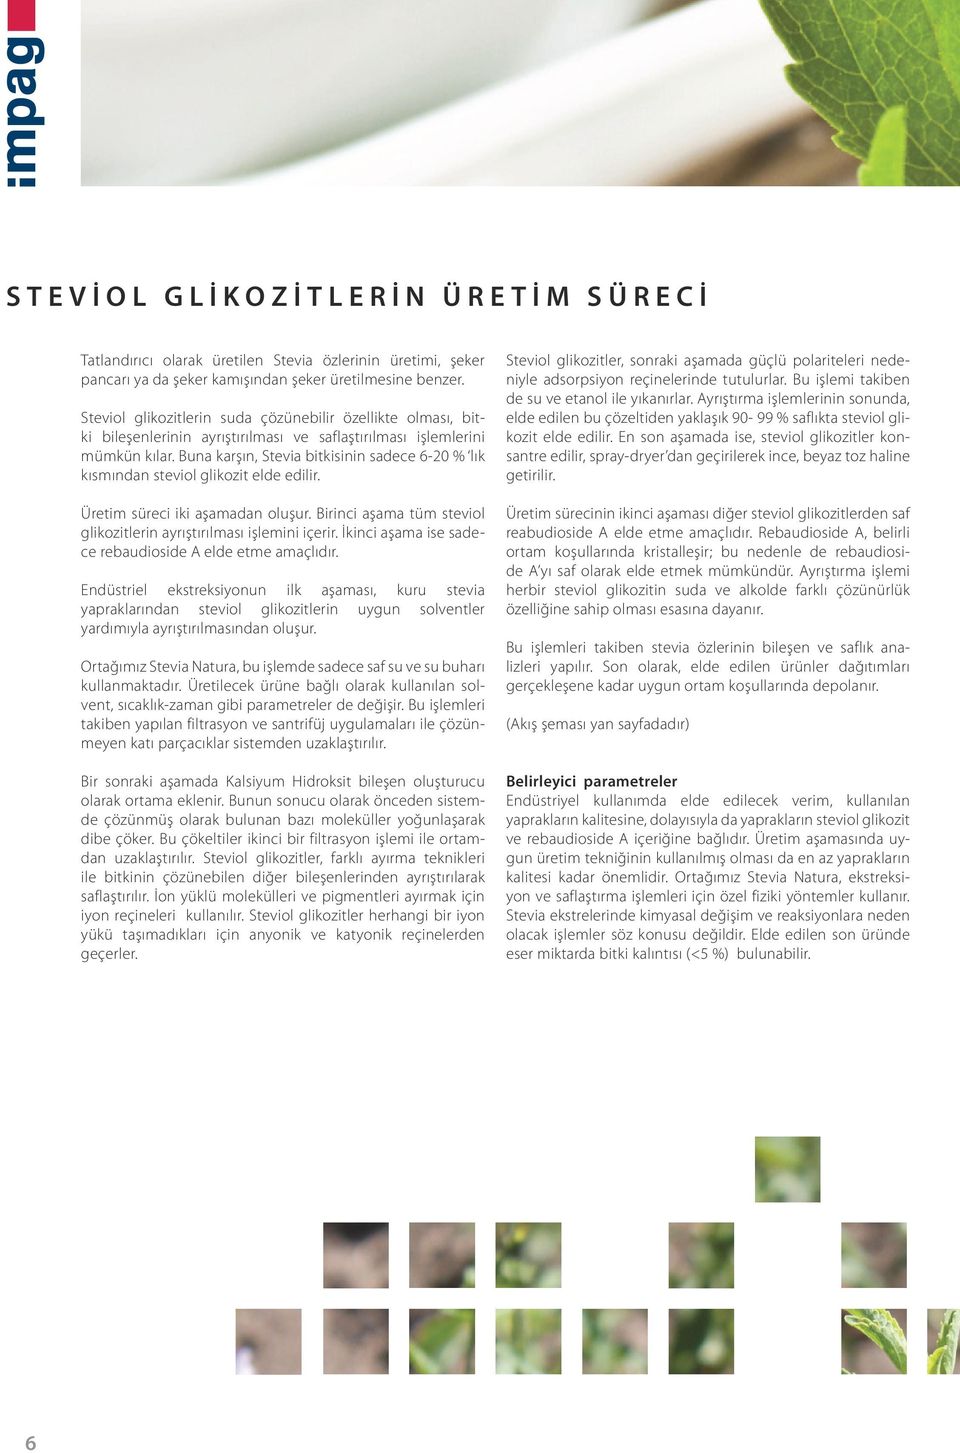 Buna karşın, Stevia bitkisinin sadece 6-20 % lık kısmından steviol glikozit elde edilir. Üretim süreci iki aşamadan oluşur. Birinci aşama tüm steviol glikozitlerin ayrıştırılması işlemini içerir.